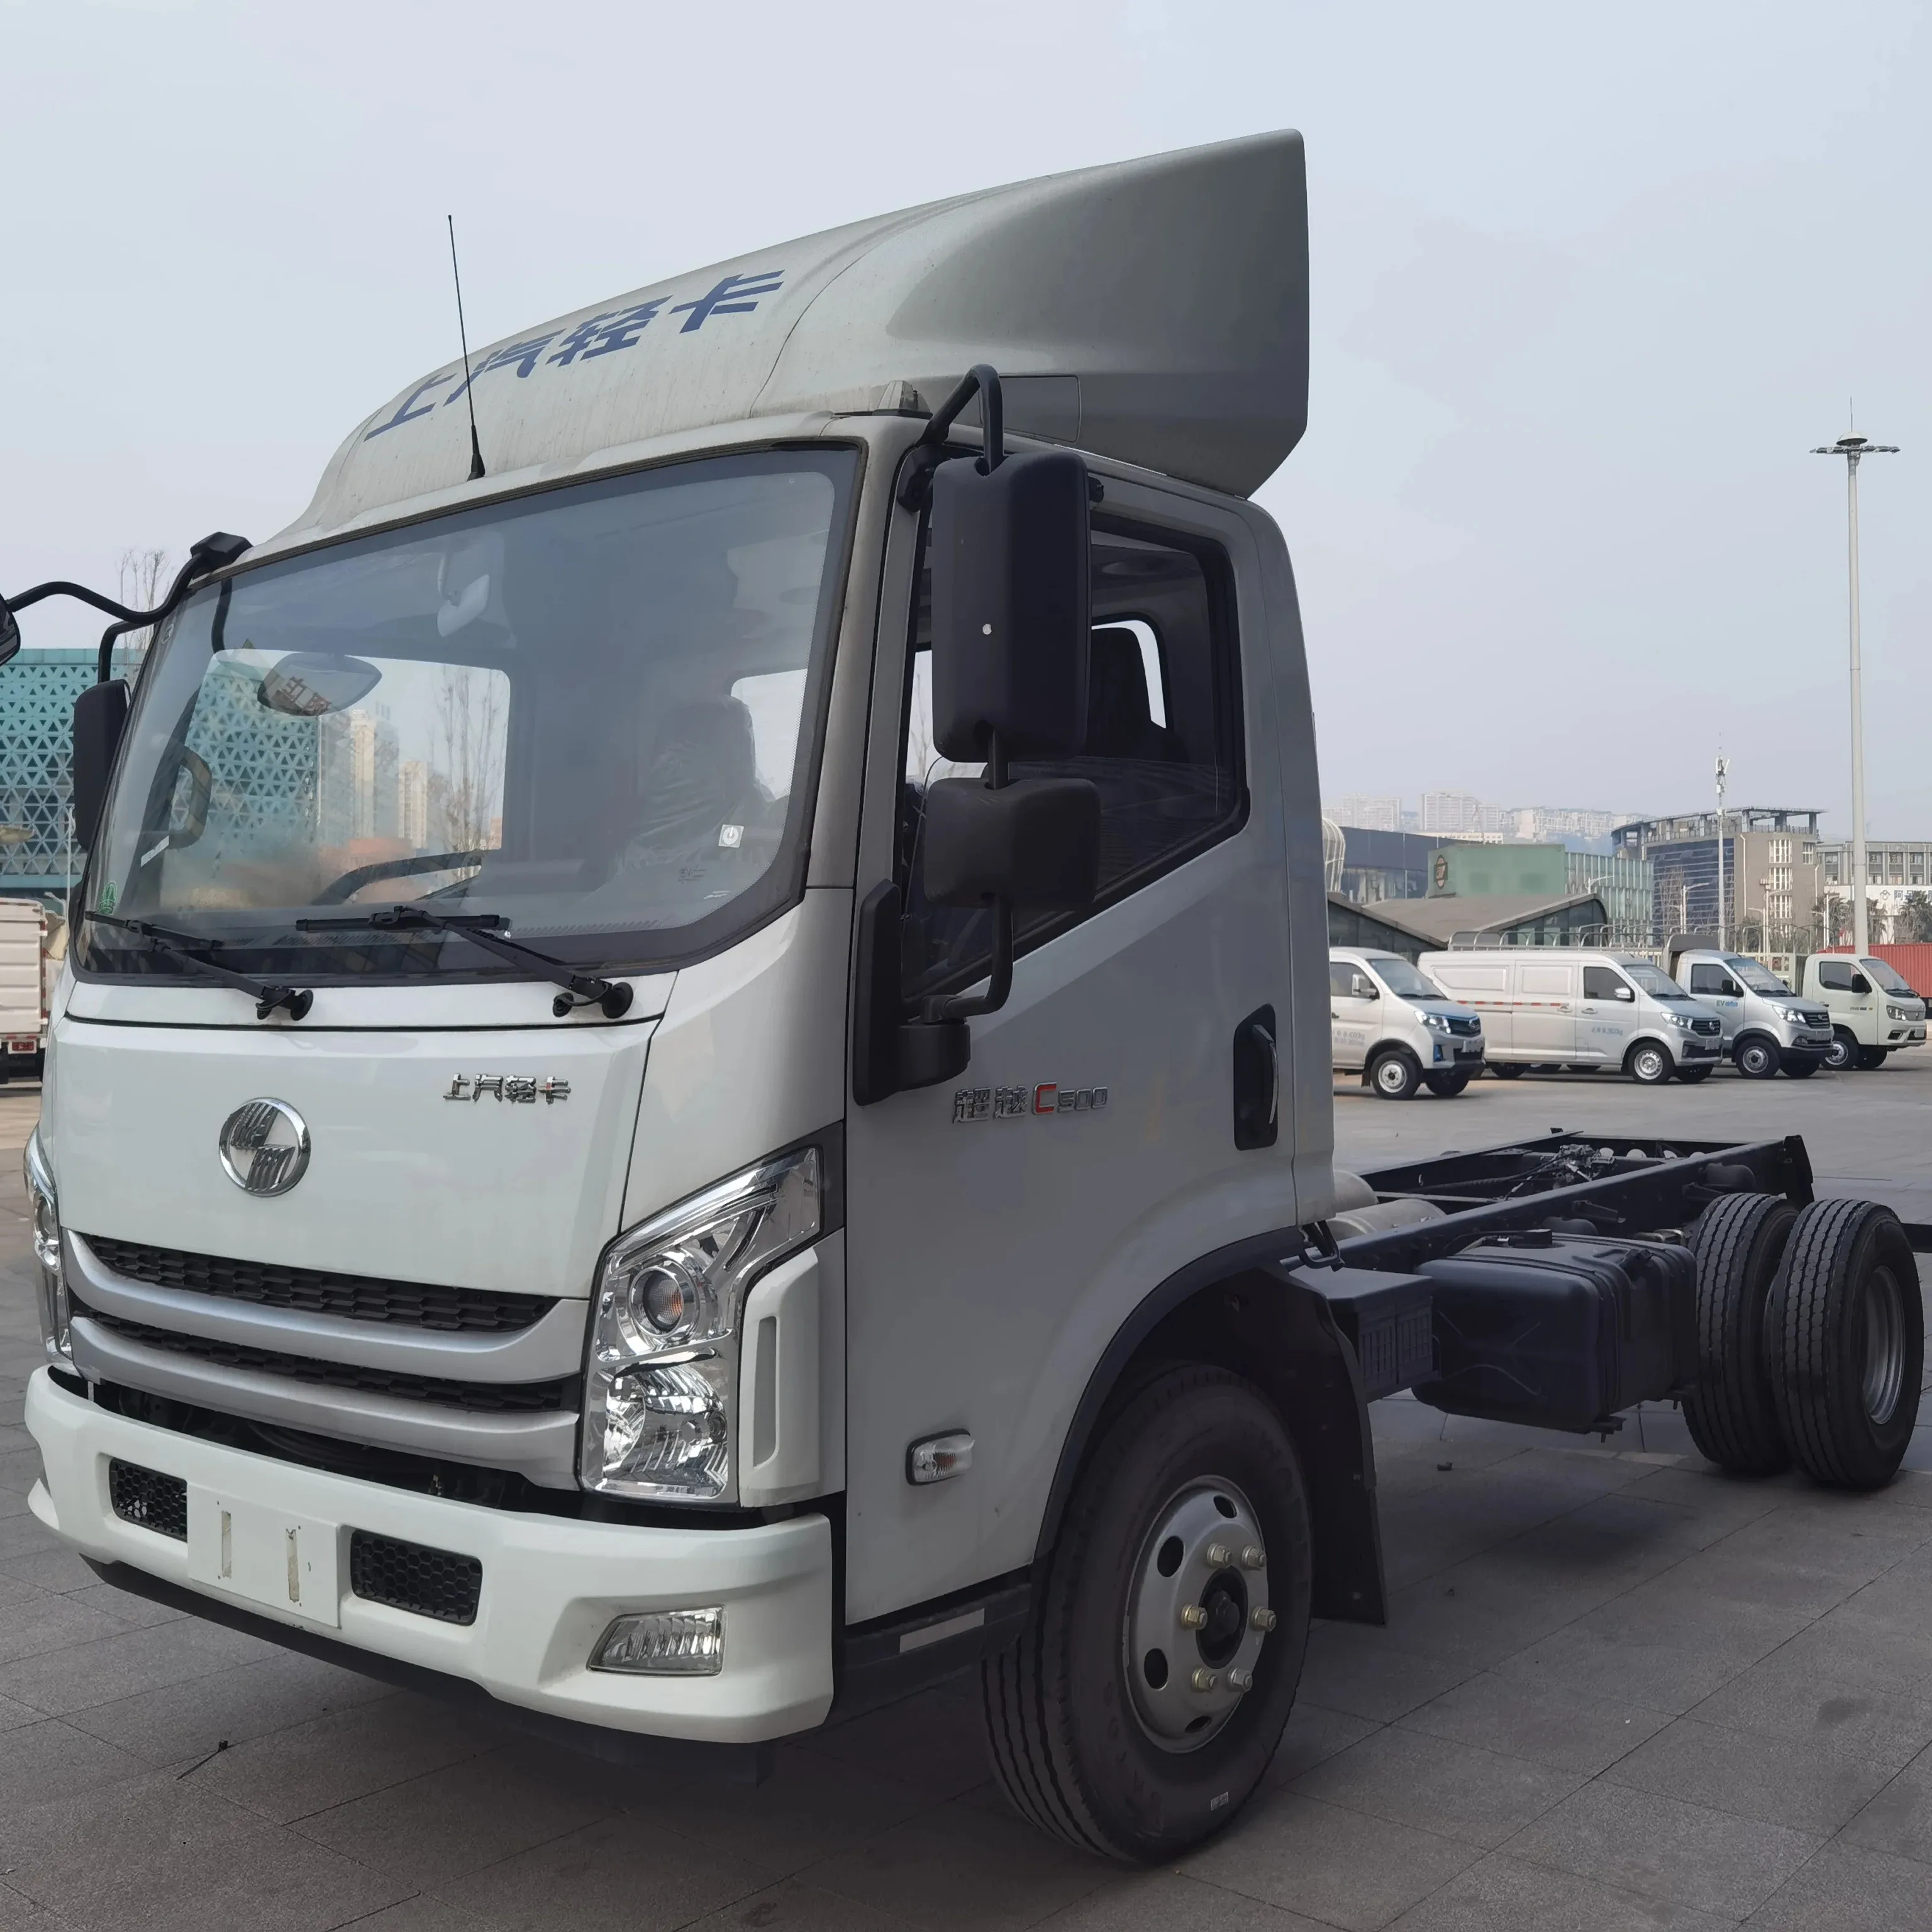 Vente de gros Camion neuf C500 de Shanghai avec moteur diesel de 3,0 L en Chine Nouveau van diesel